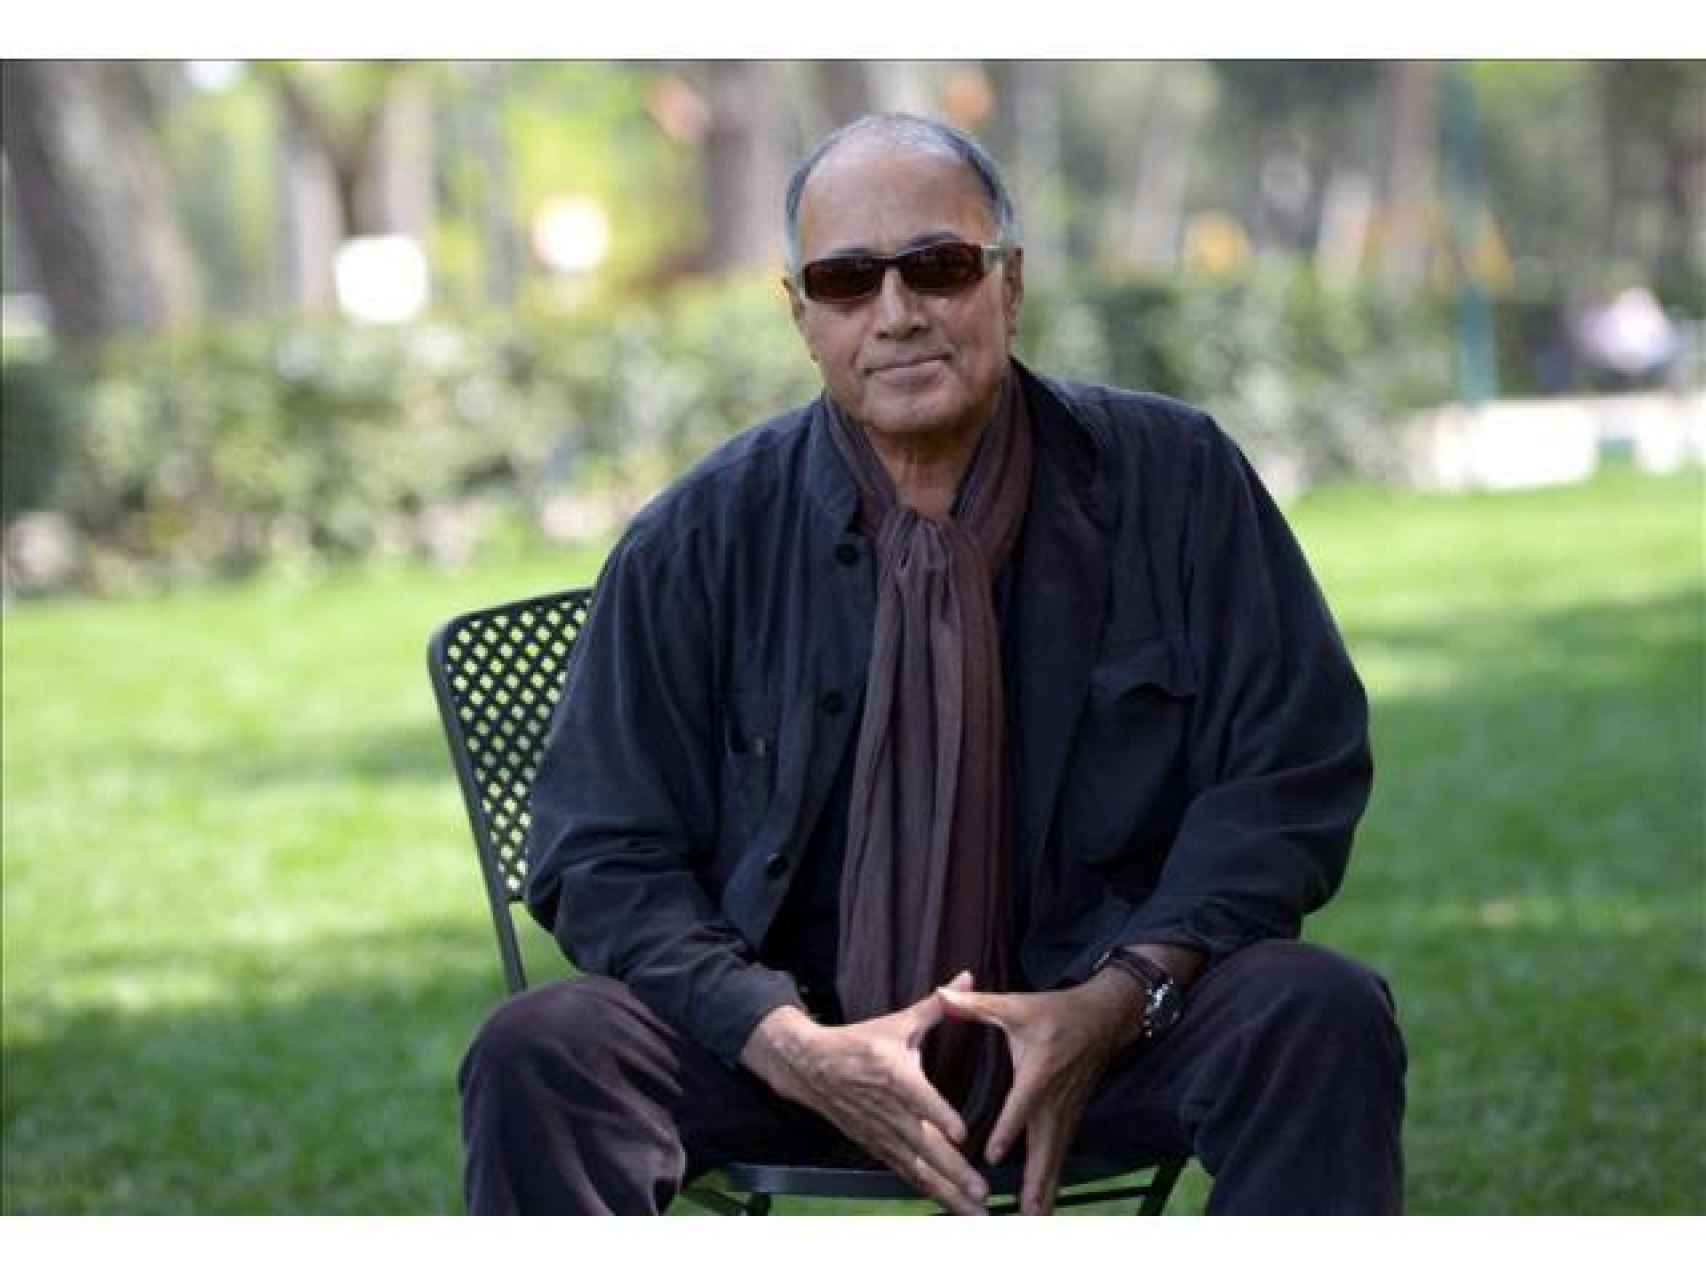 el-director-irani-kiarostami-participara-festival-cine-cartagena-2014